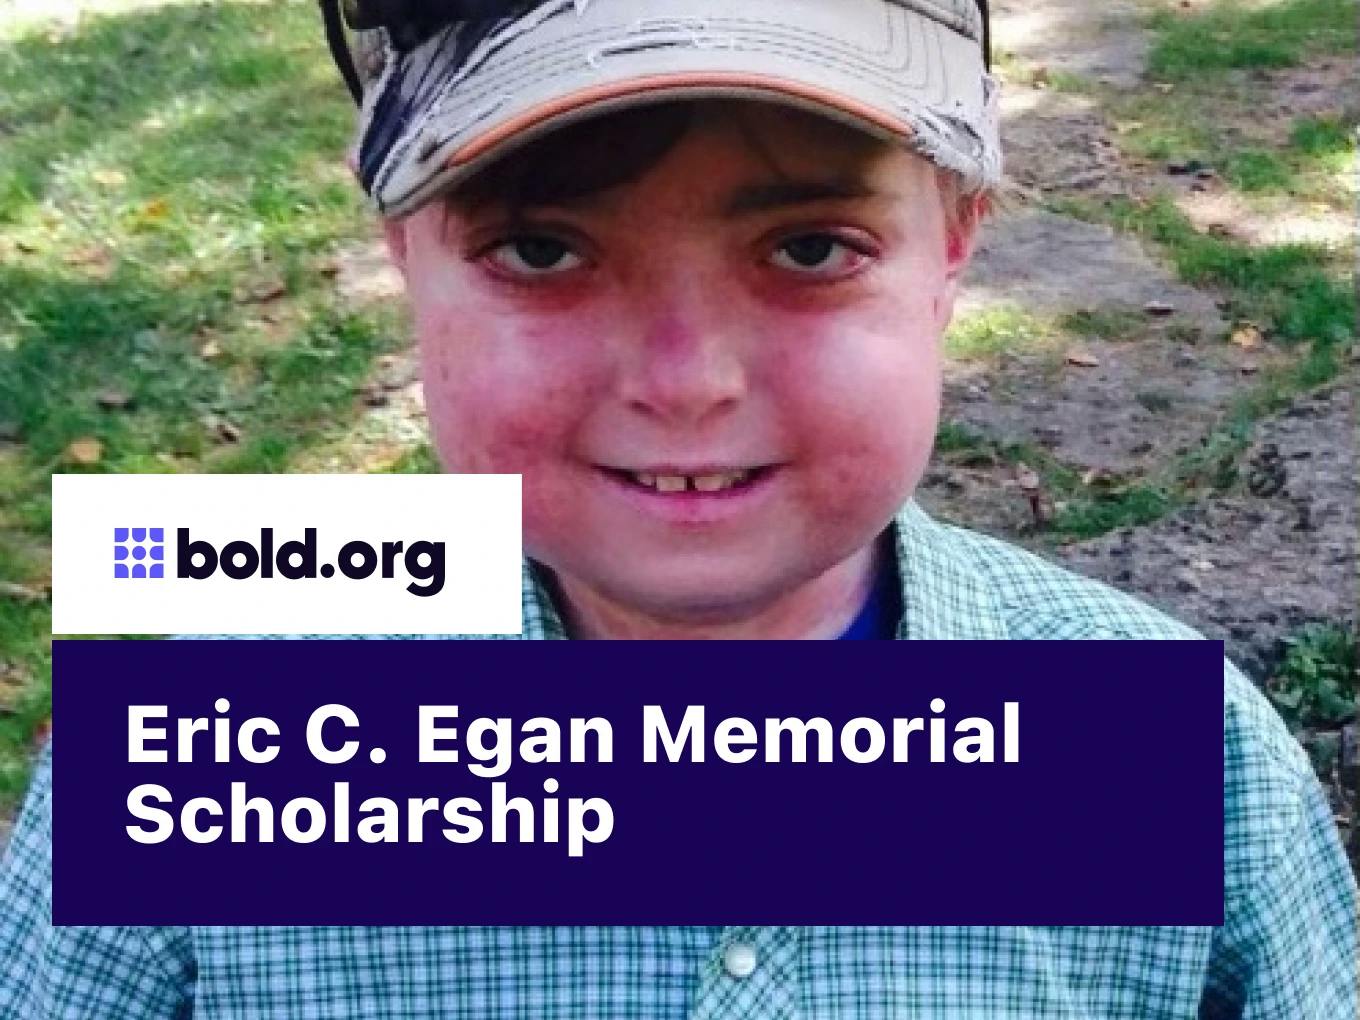 Eric C. Egan Memorial Scholarship